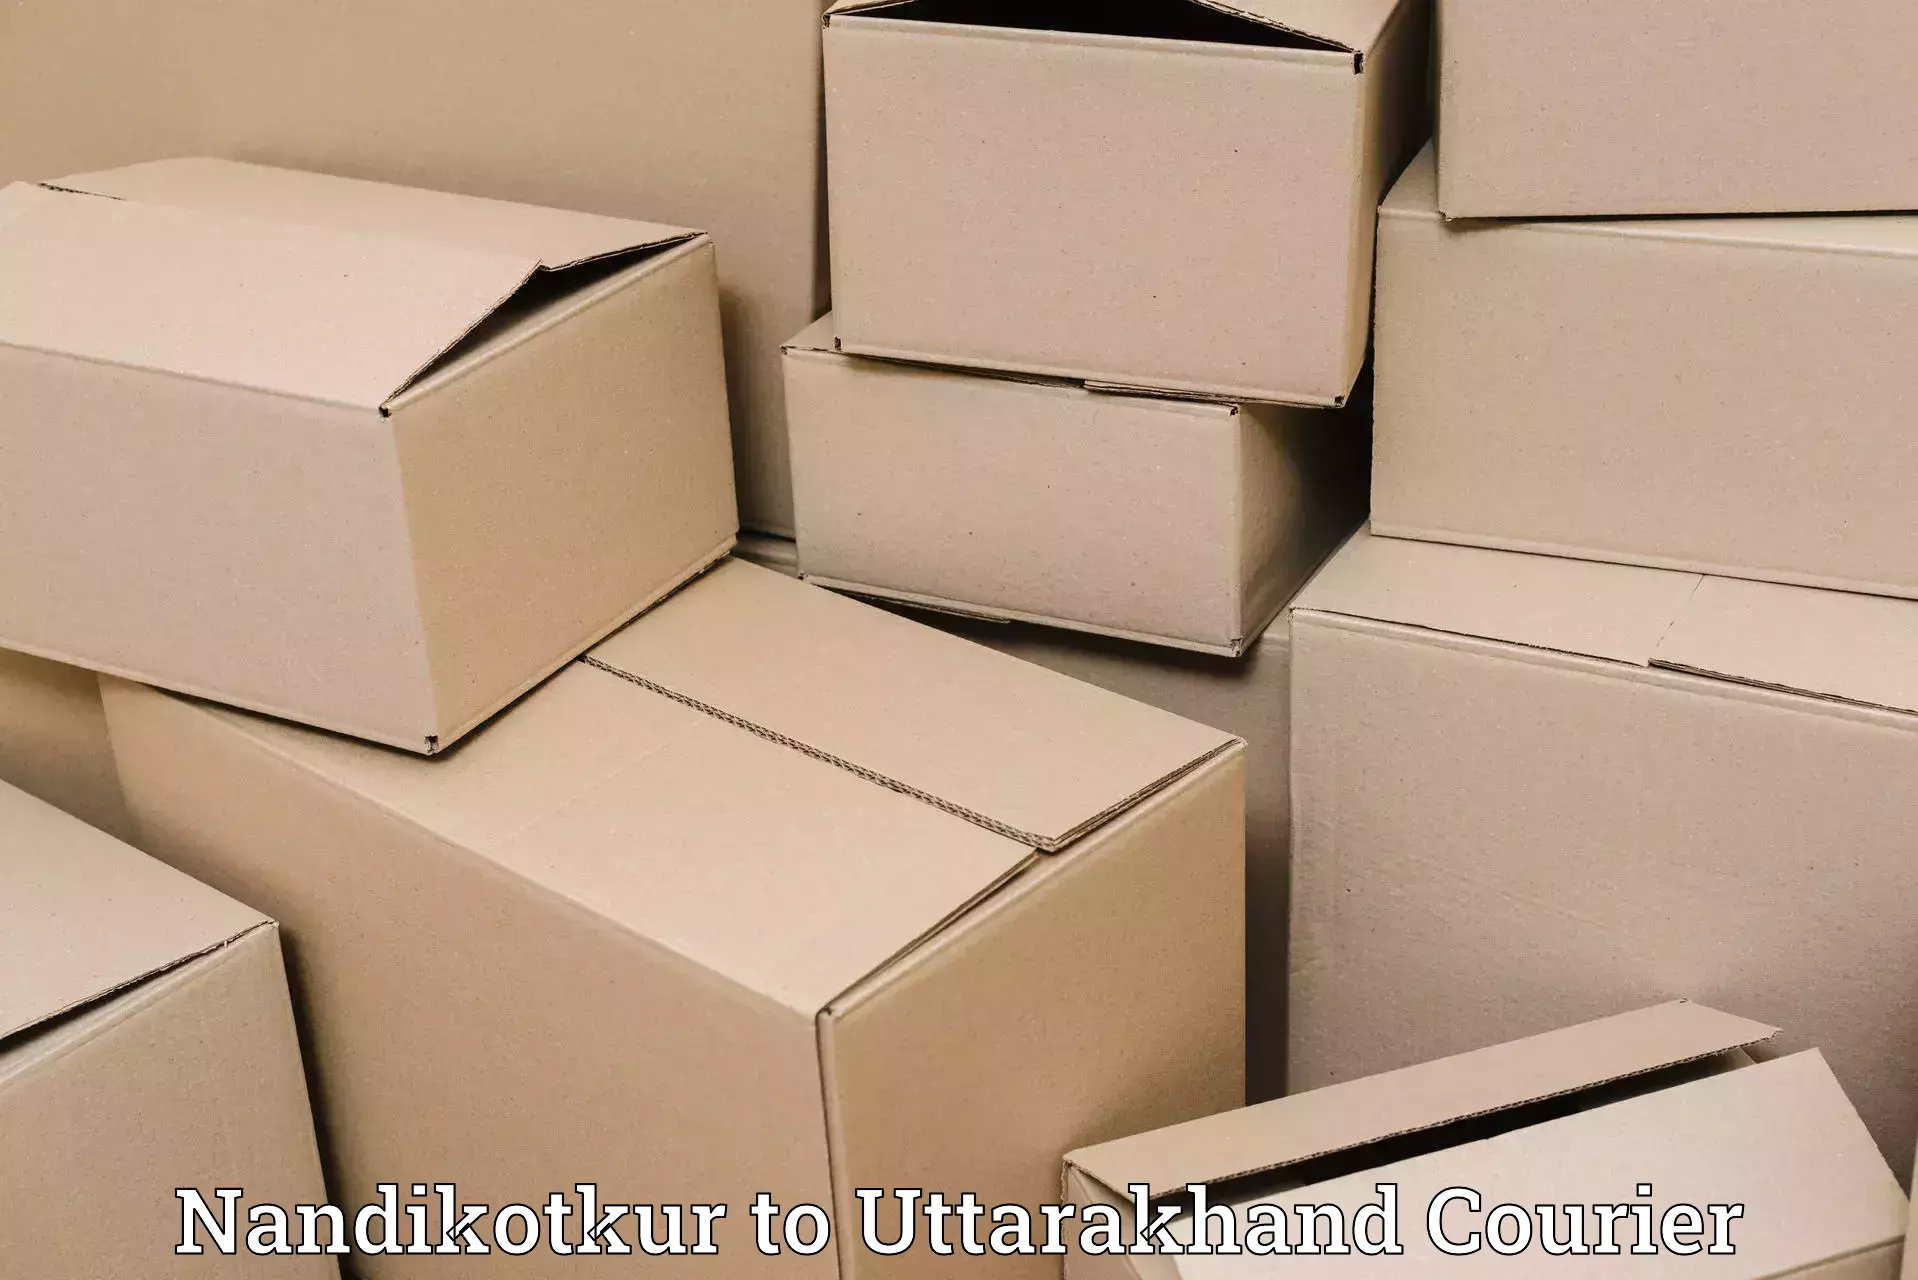 Package delivery network Nandikotkur to Uttarkashi